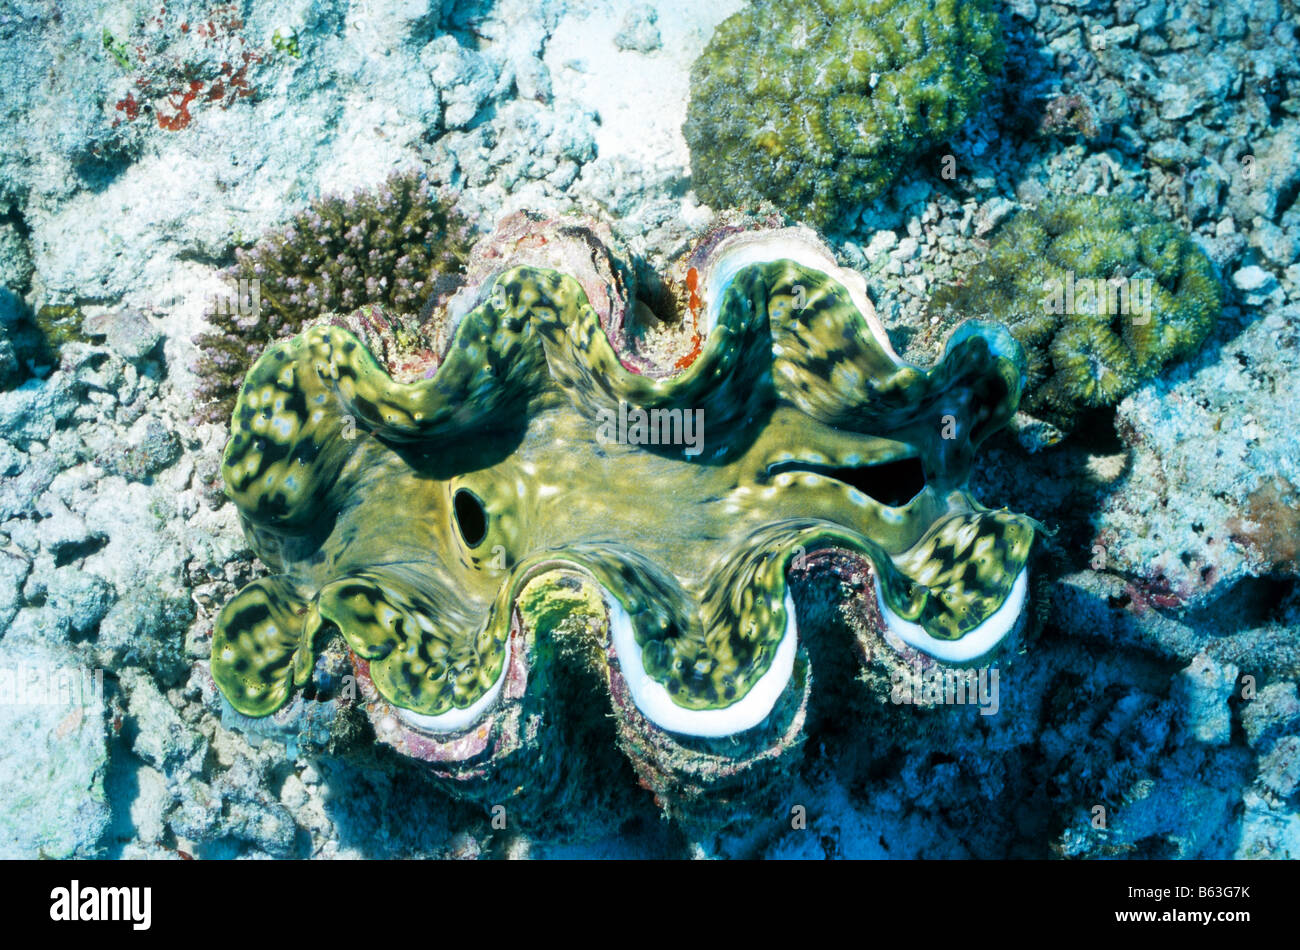 Große Riesenmuschel. Muscheln. Tridacnidae. Tridacna Maxima. Marine Unterwasserwelt der Malediven. Stockfoto